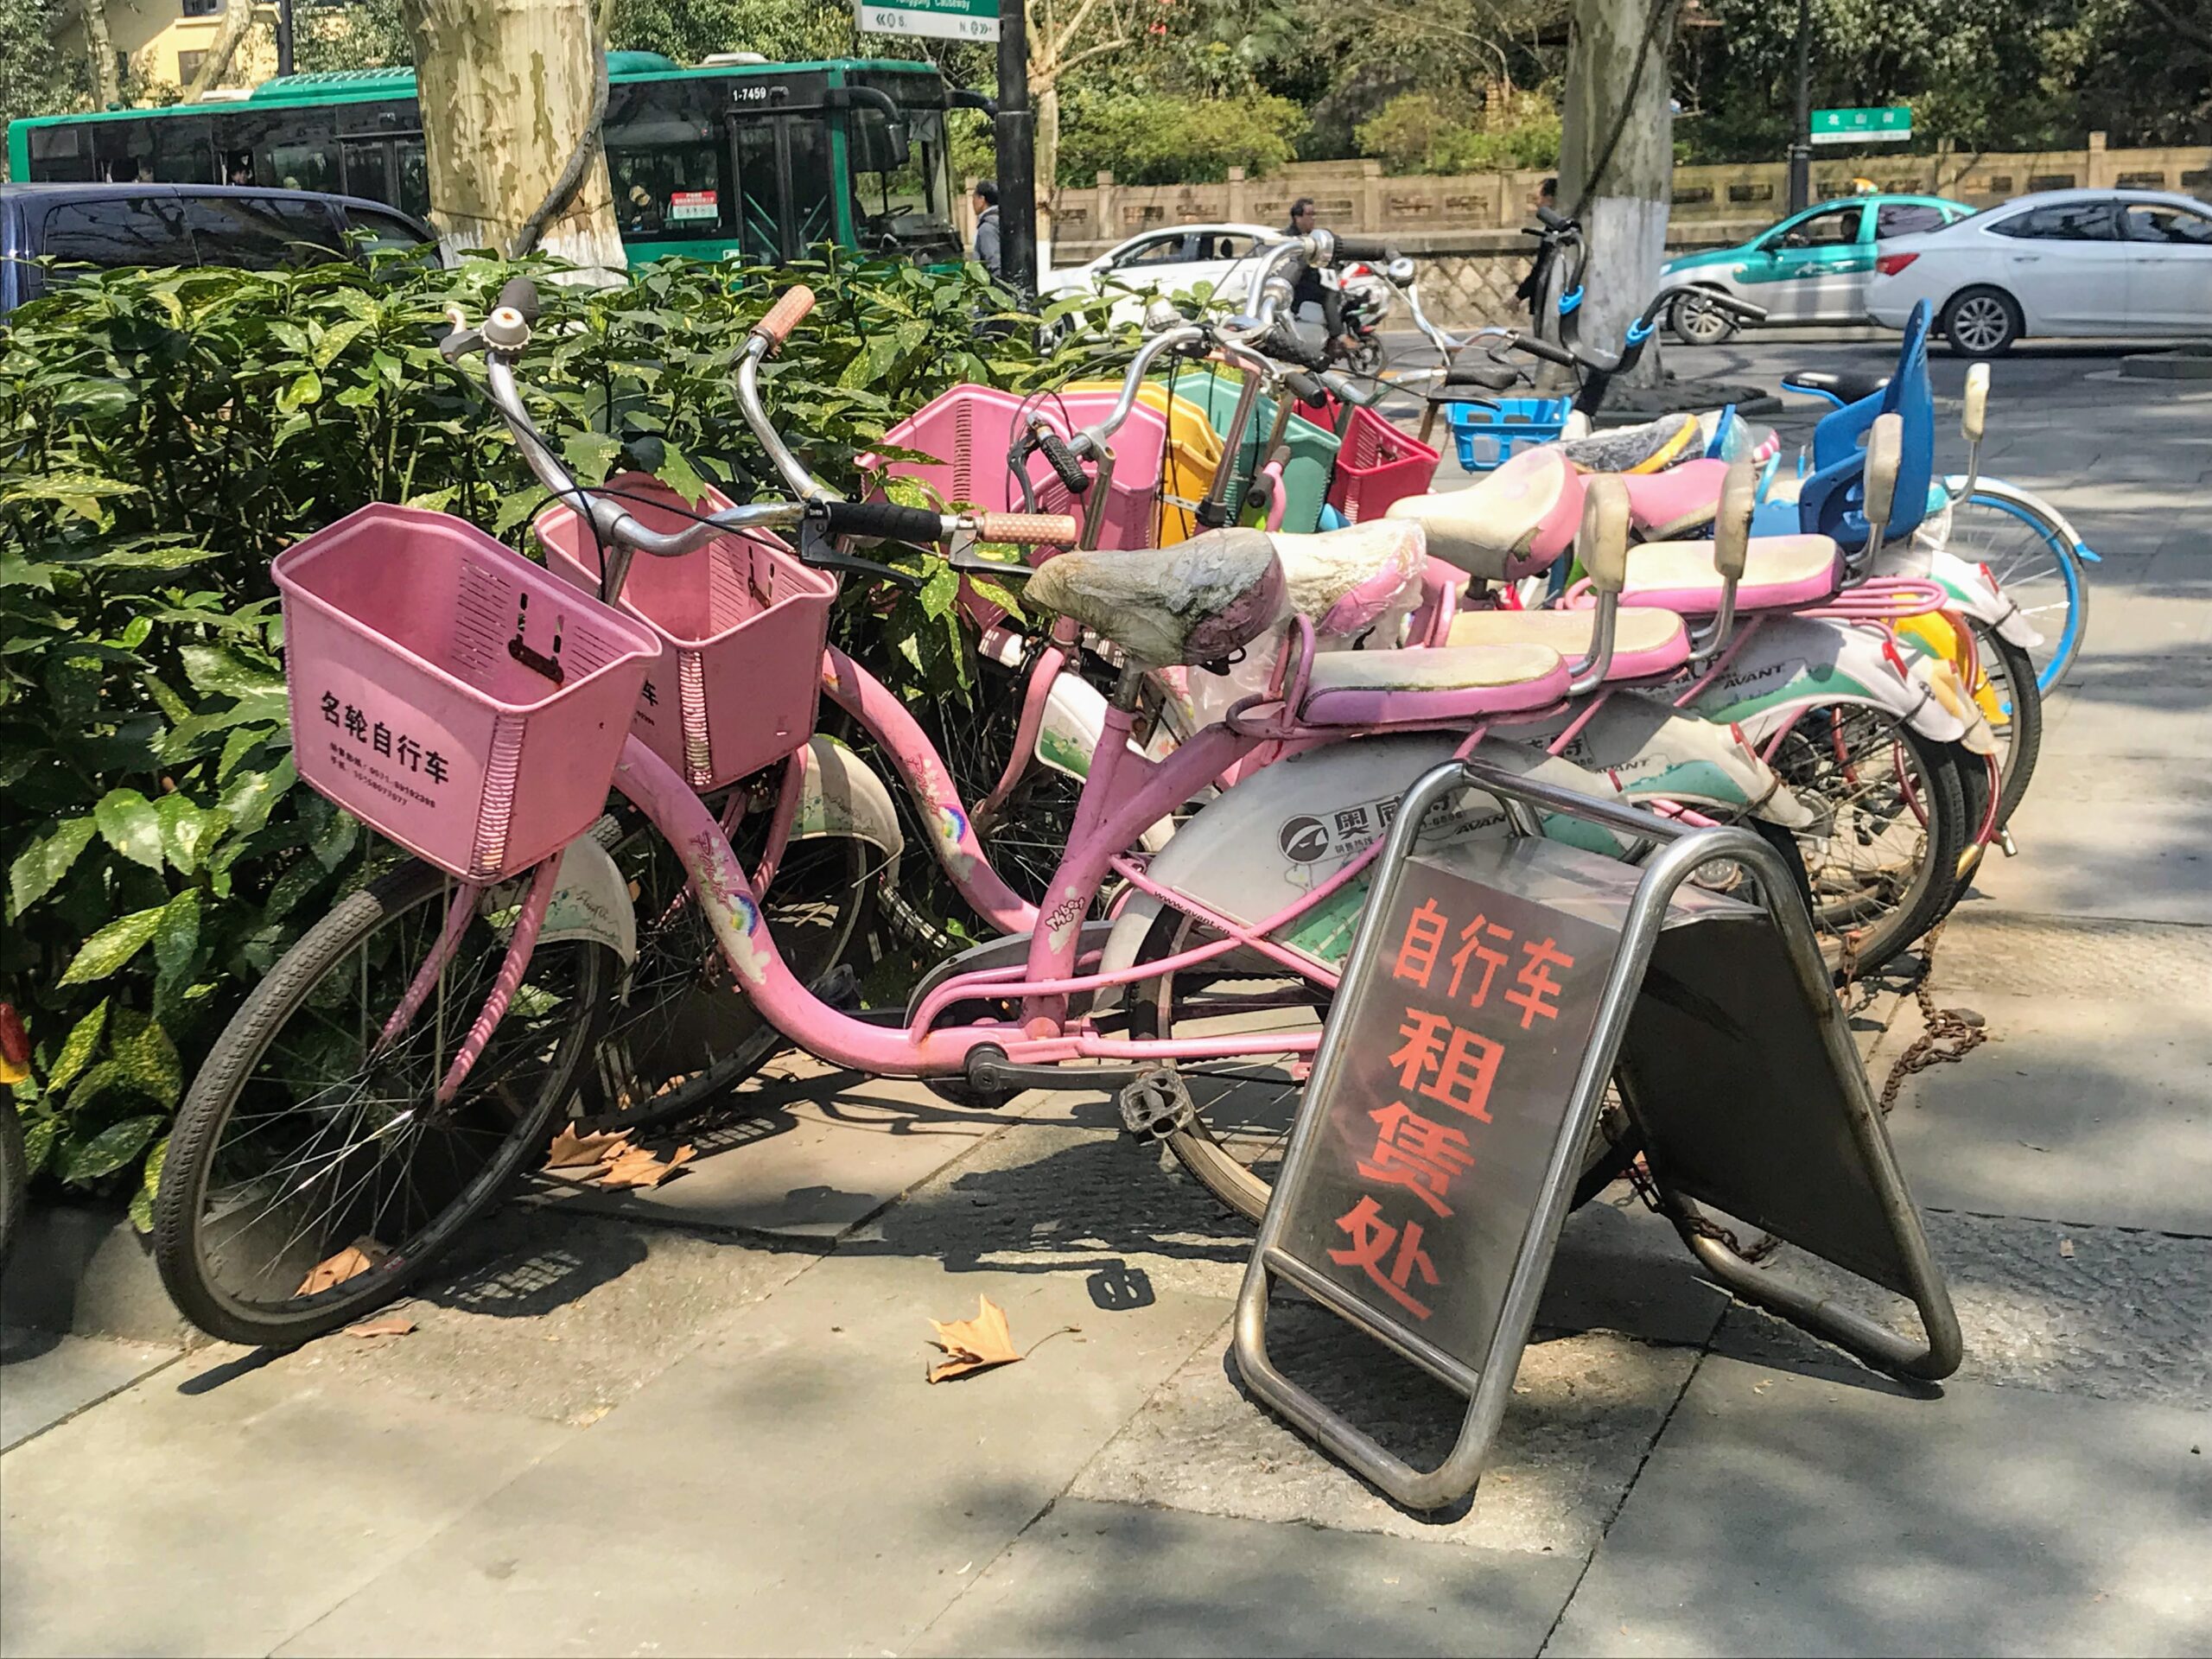 Bikes in China